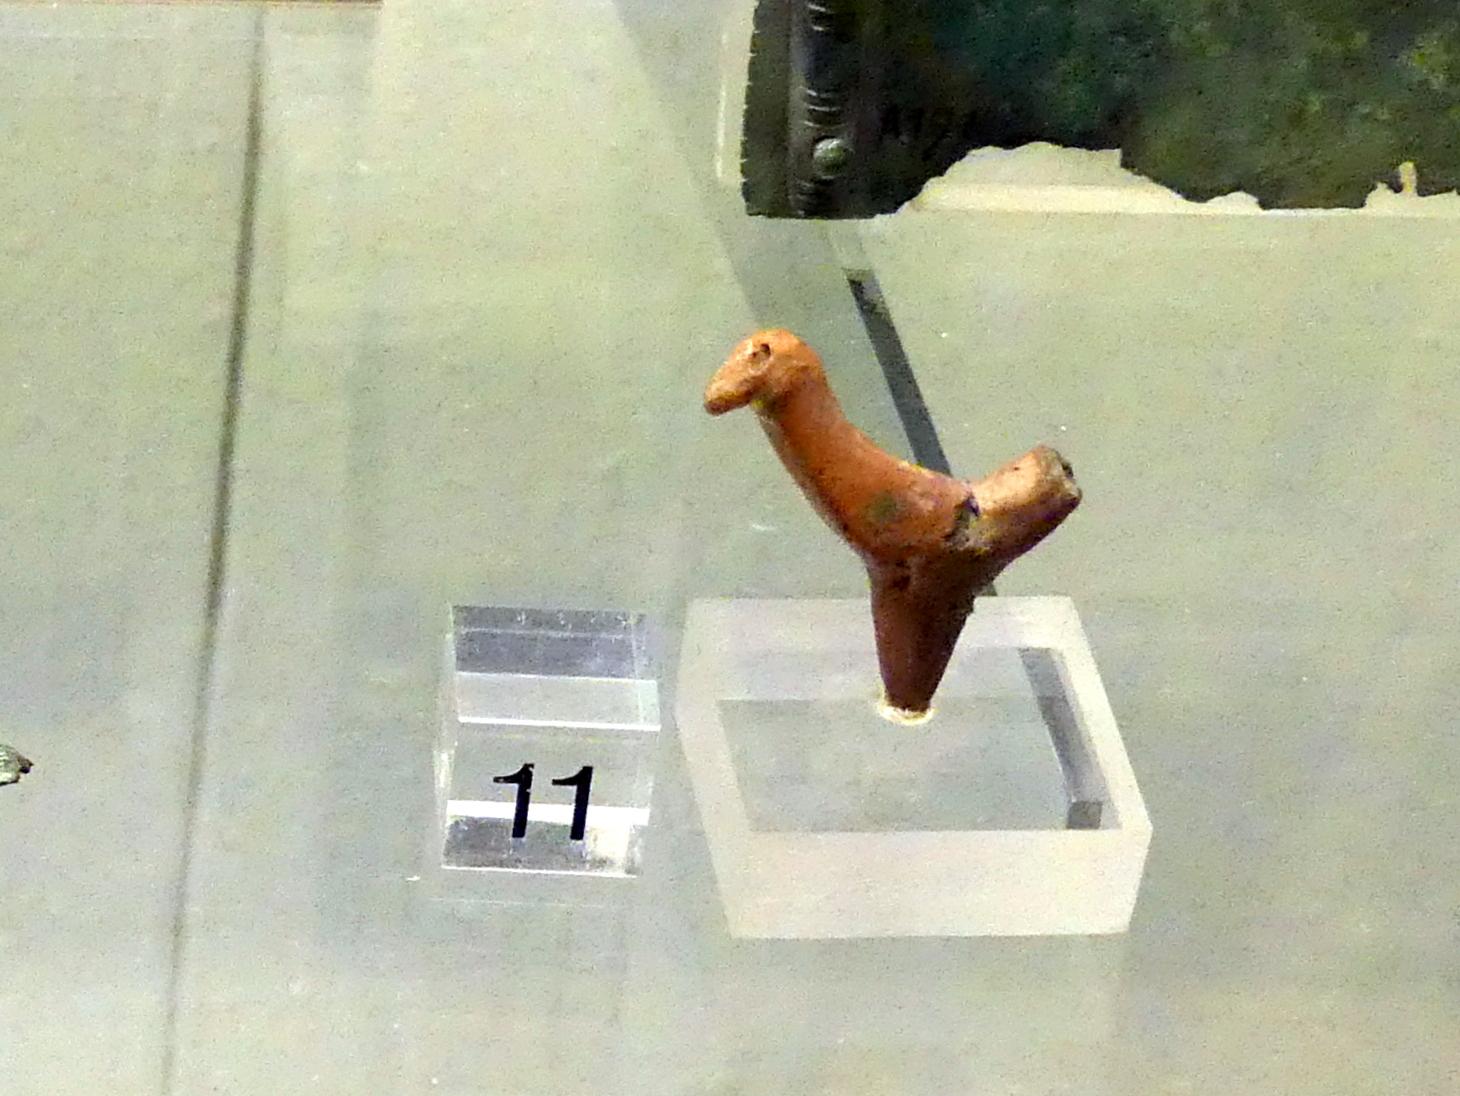 Tonfigur eines Vogels, Hallstattzeit, 700 - 200 v. Chr.